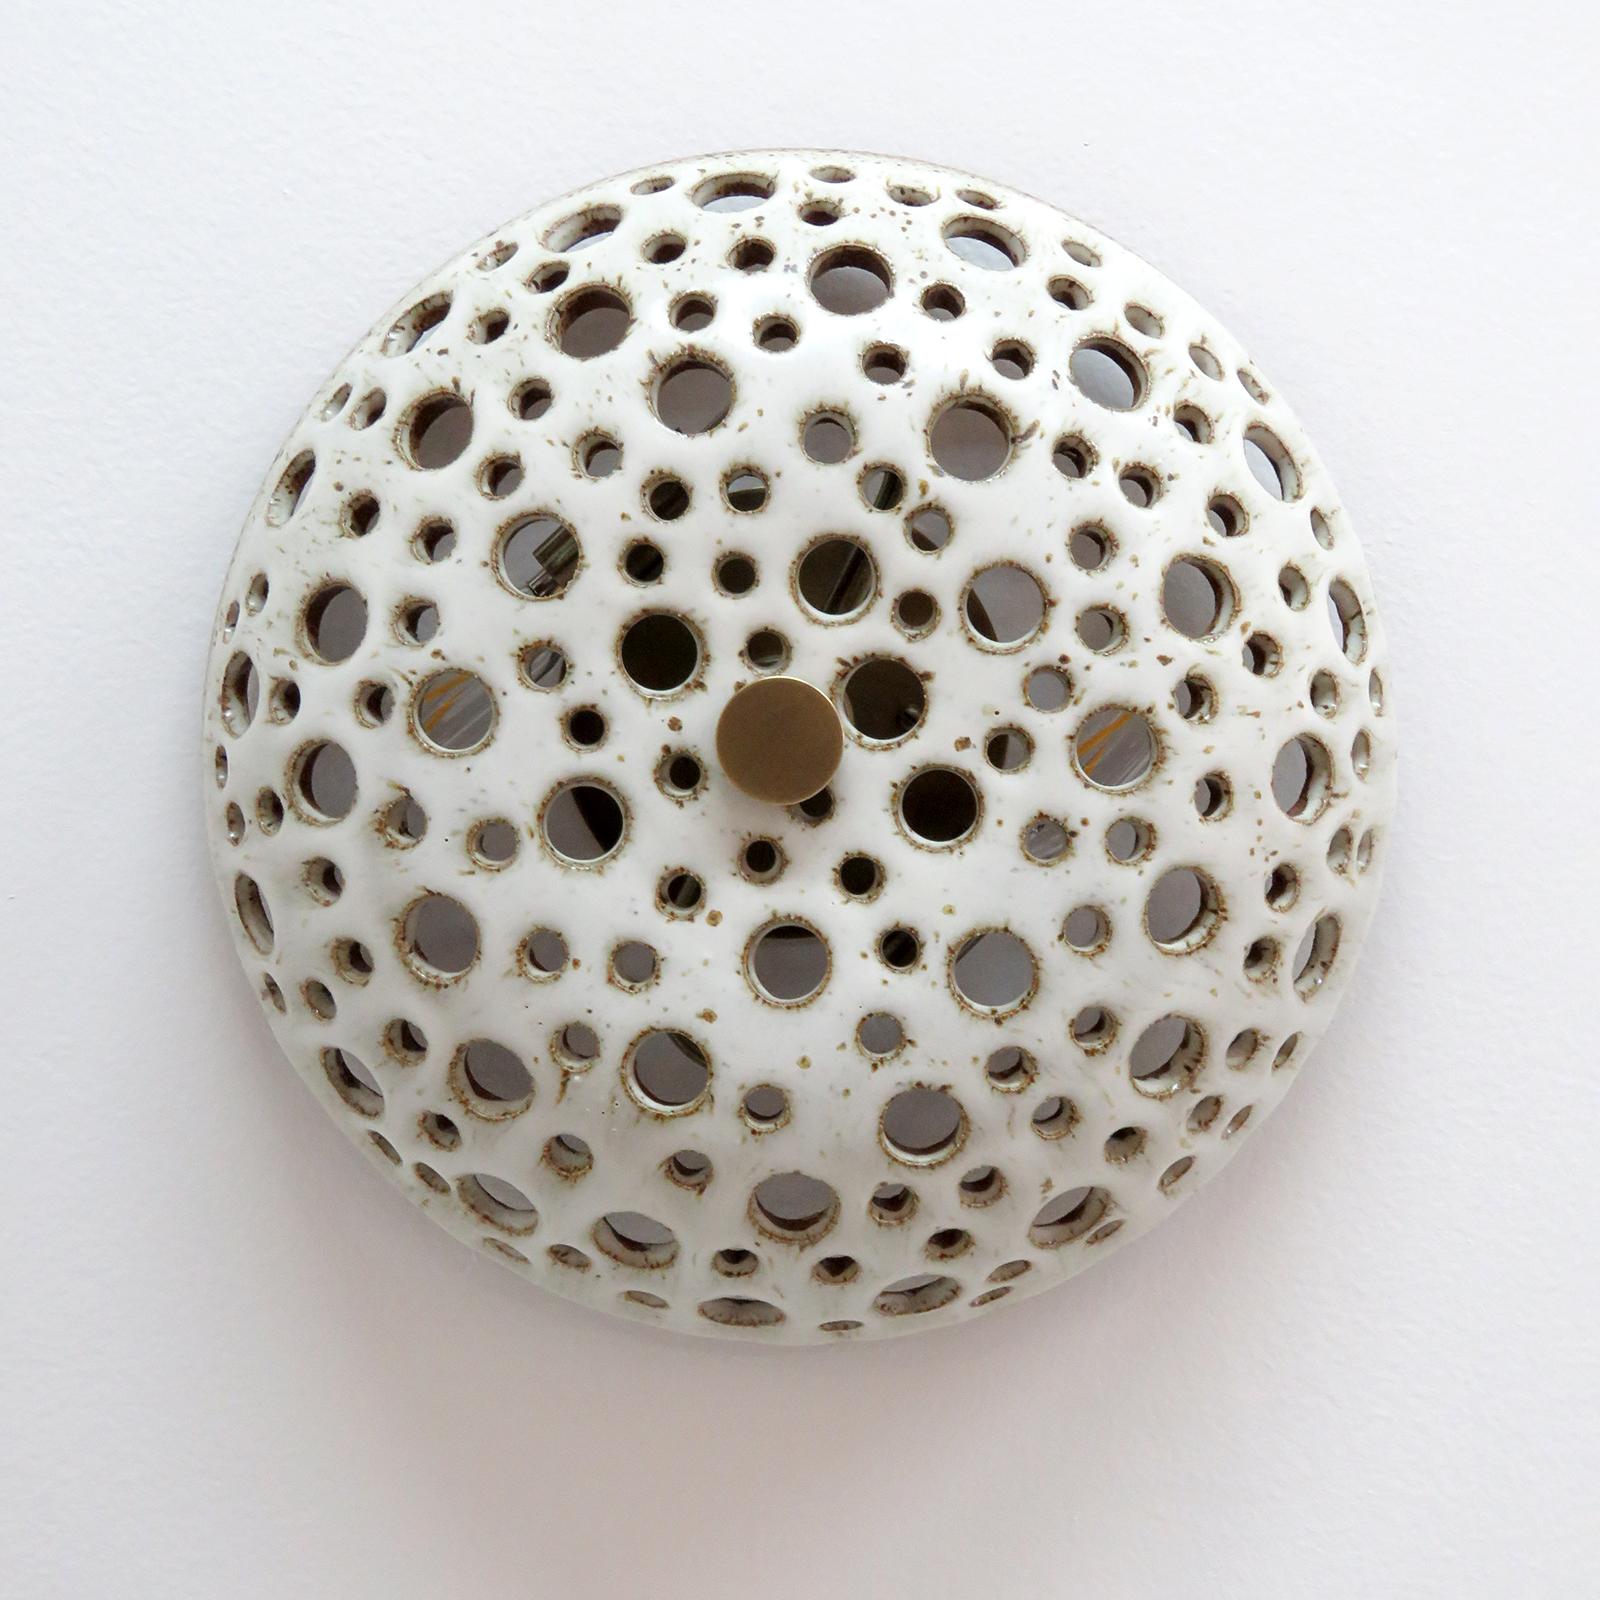 Étonnante lampe en céramique No.9, conçue et fabriquée à la main par la céramiste Heather Levine, basée à Los Angeles. Grès cuit à haute température avec une glaçure blanche mate sur un corps en argile de couleur liège avec des perforations